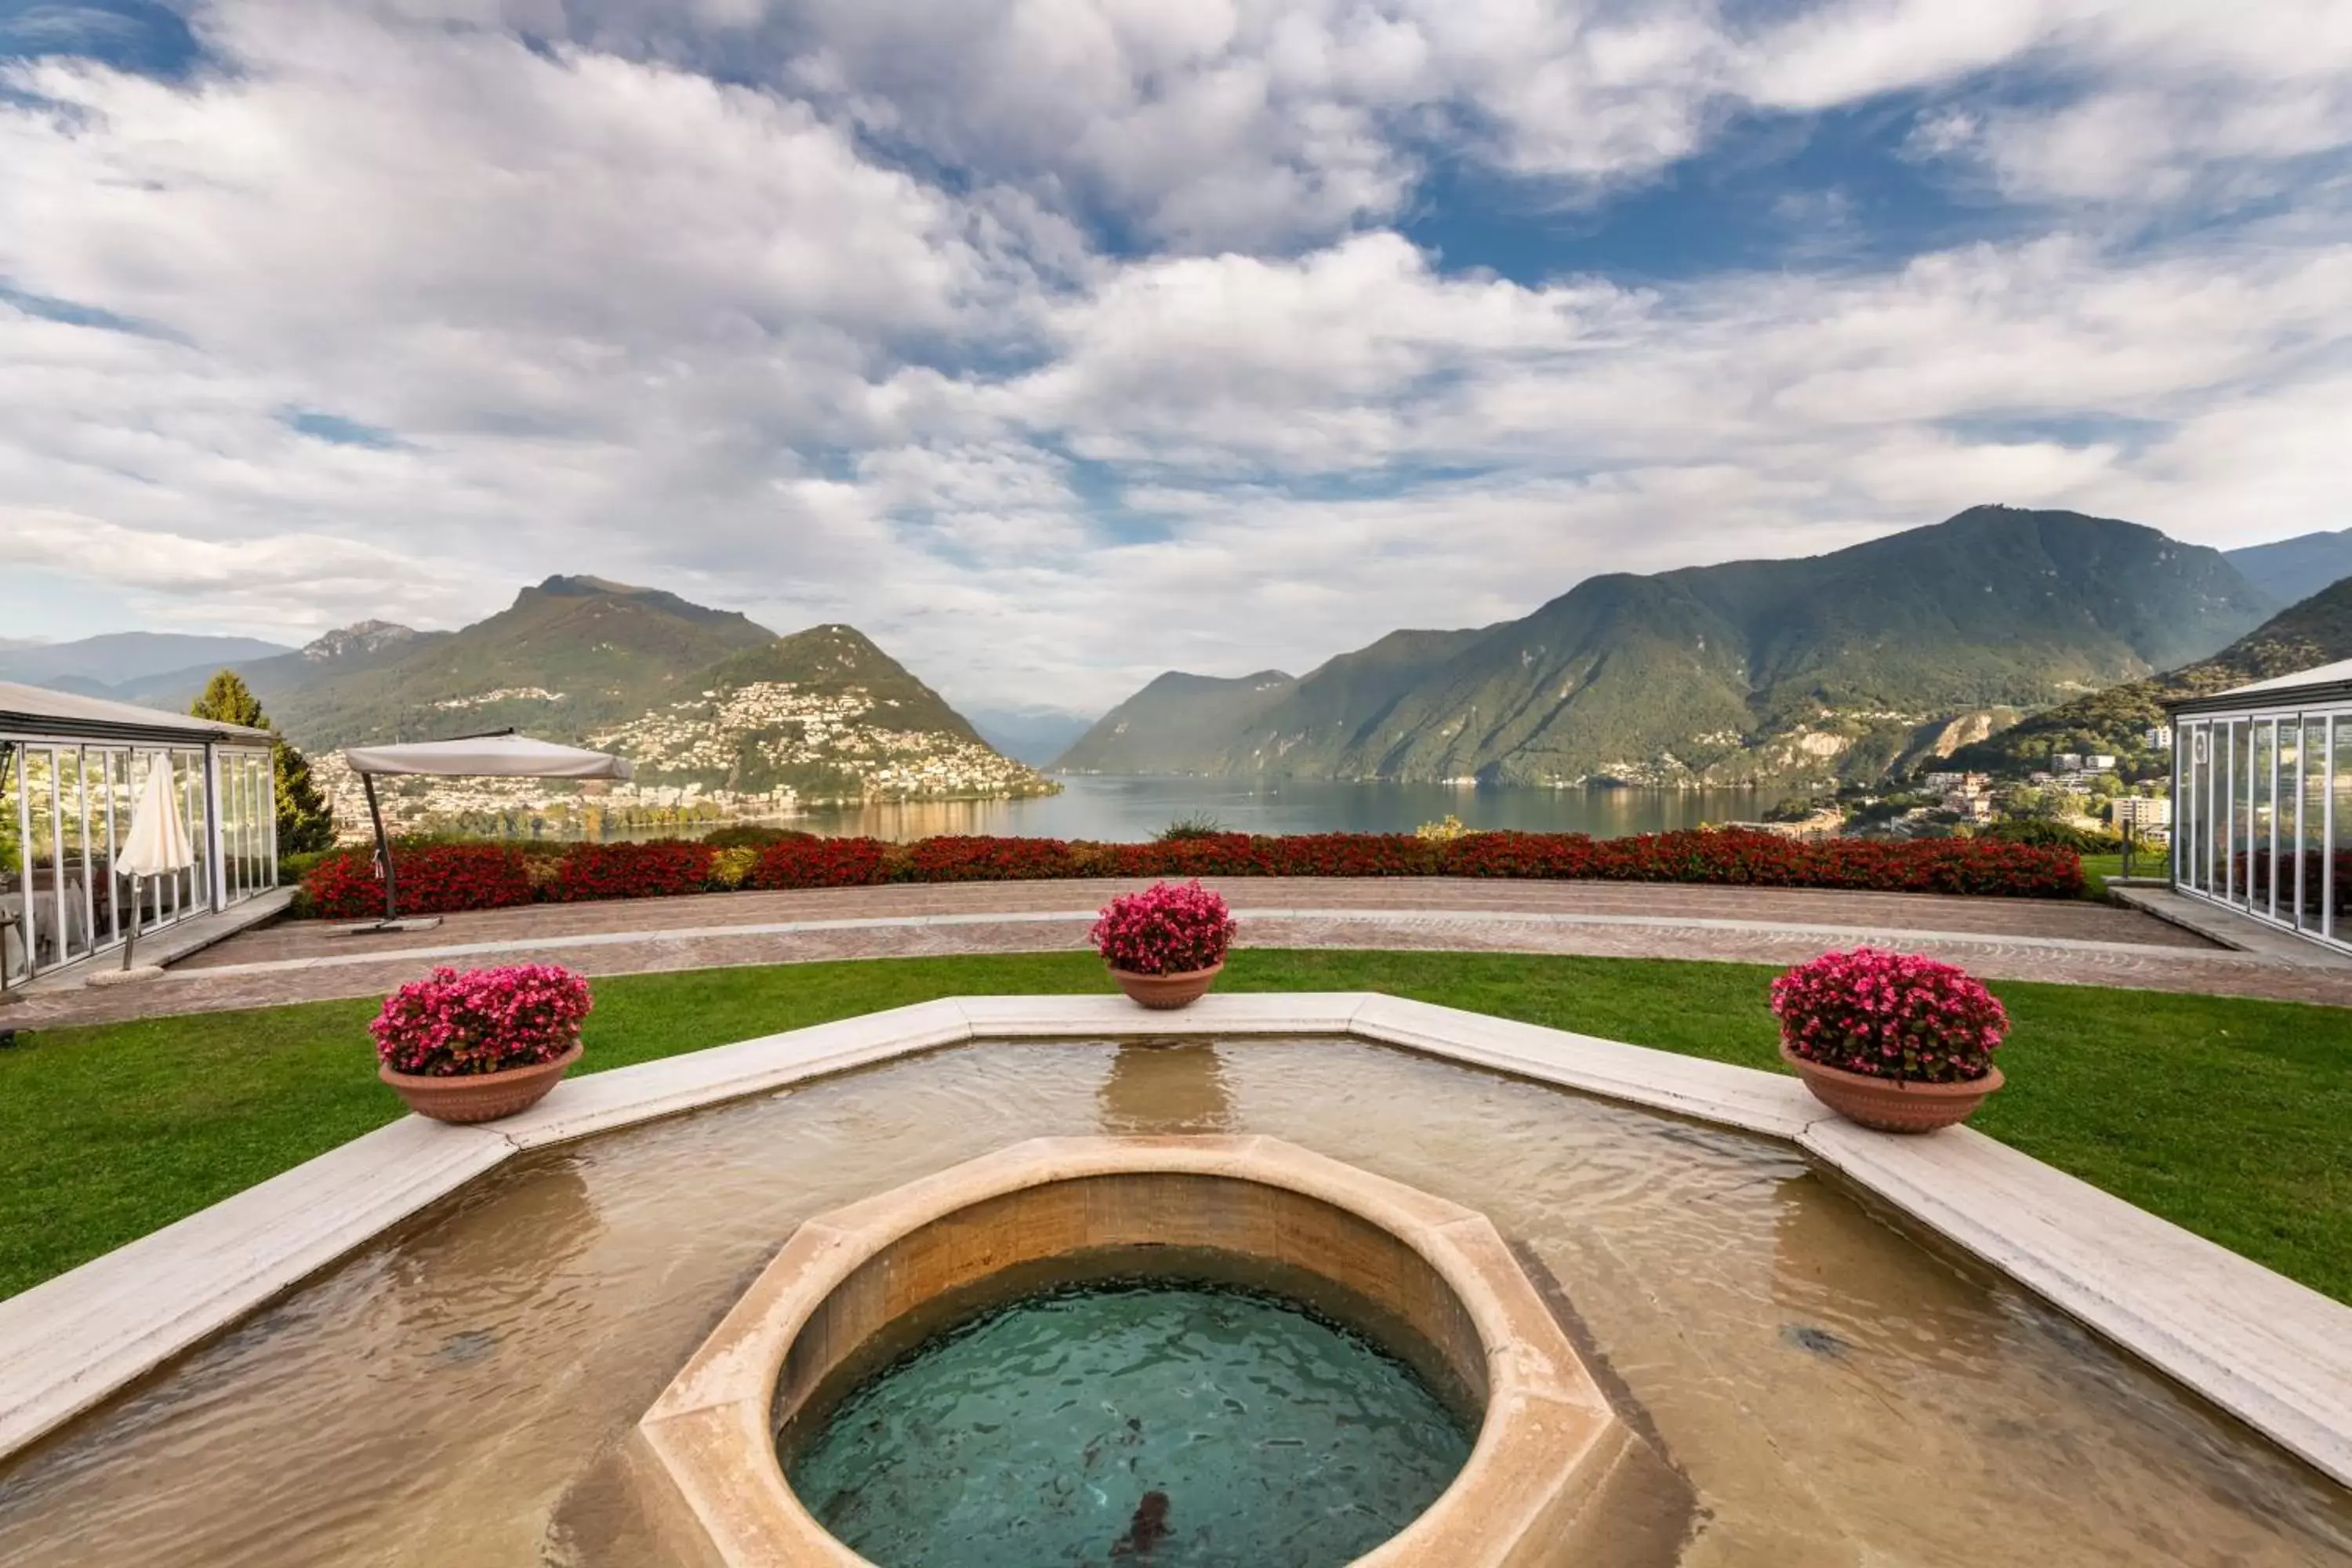 Mountain View in Villa Principe Leopoldo - Ticino Hotels Group